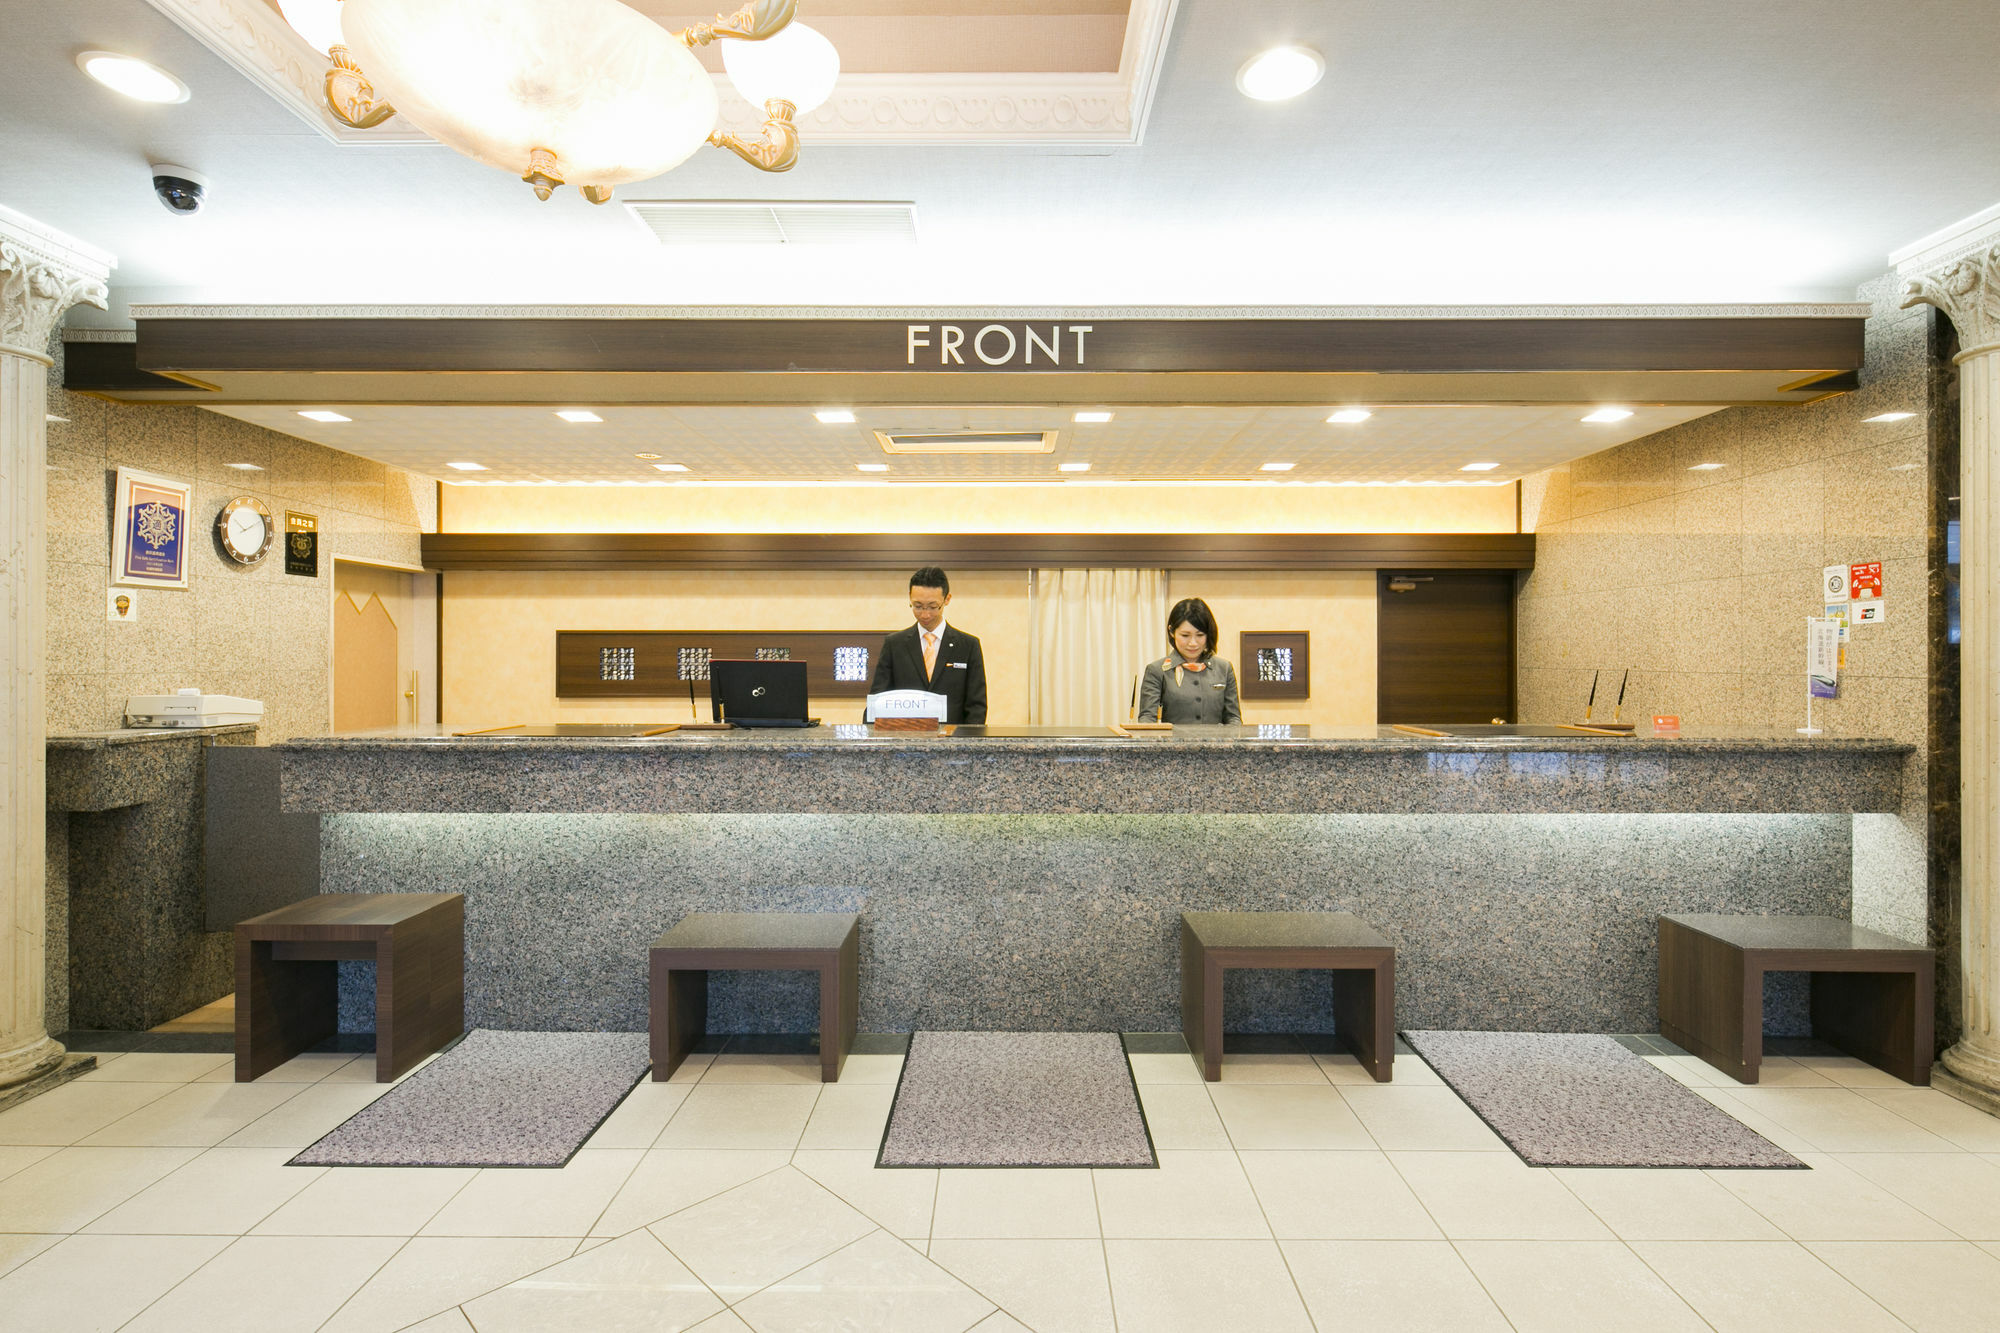 プレミアホテル -Cabin- 札幌 エクステリア 写真